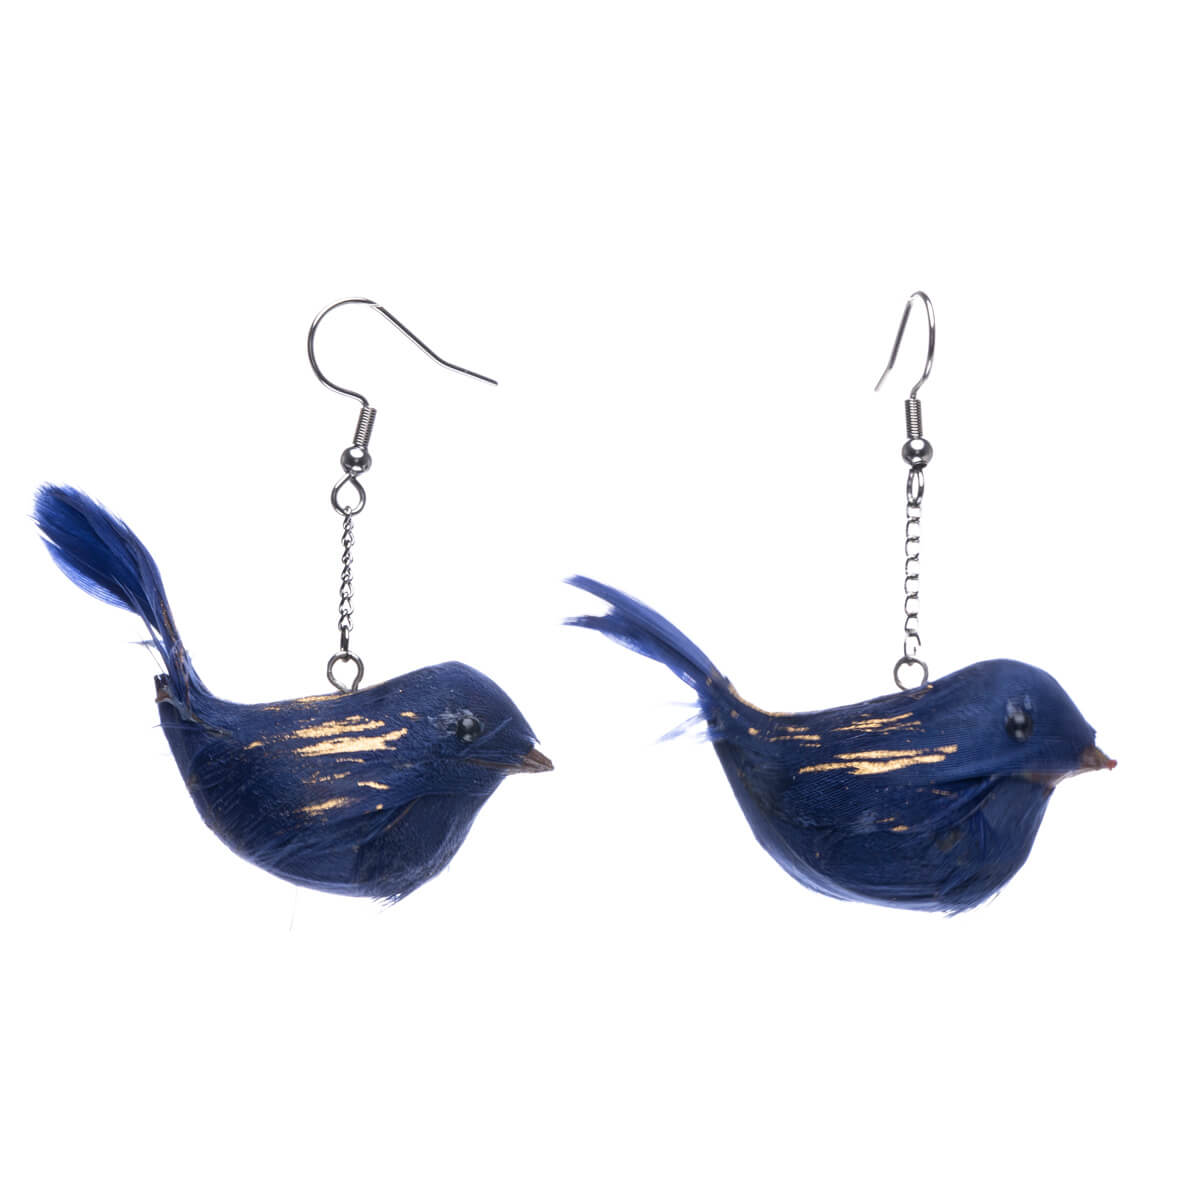 Bird earrings - Made in Finland (Steel 316L)